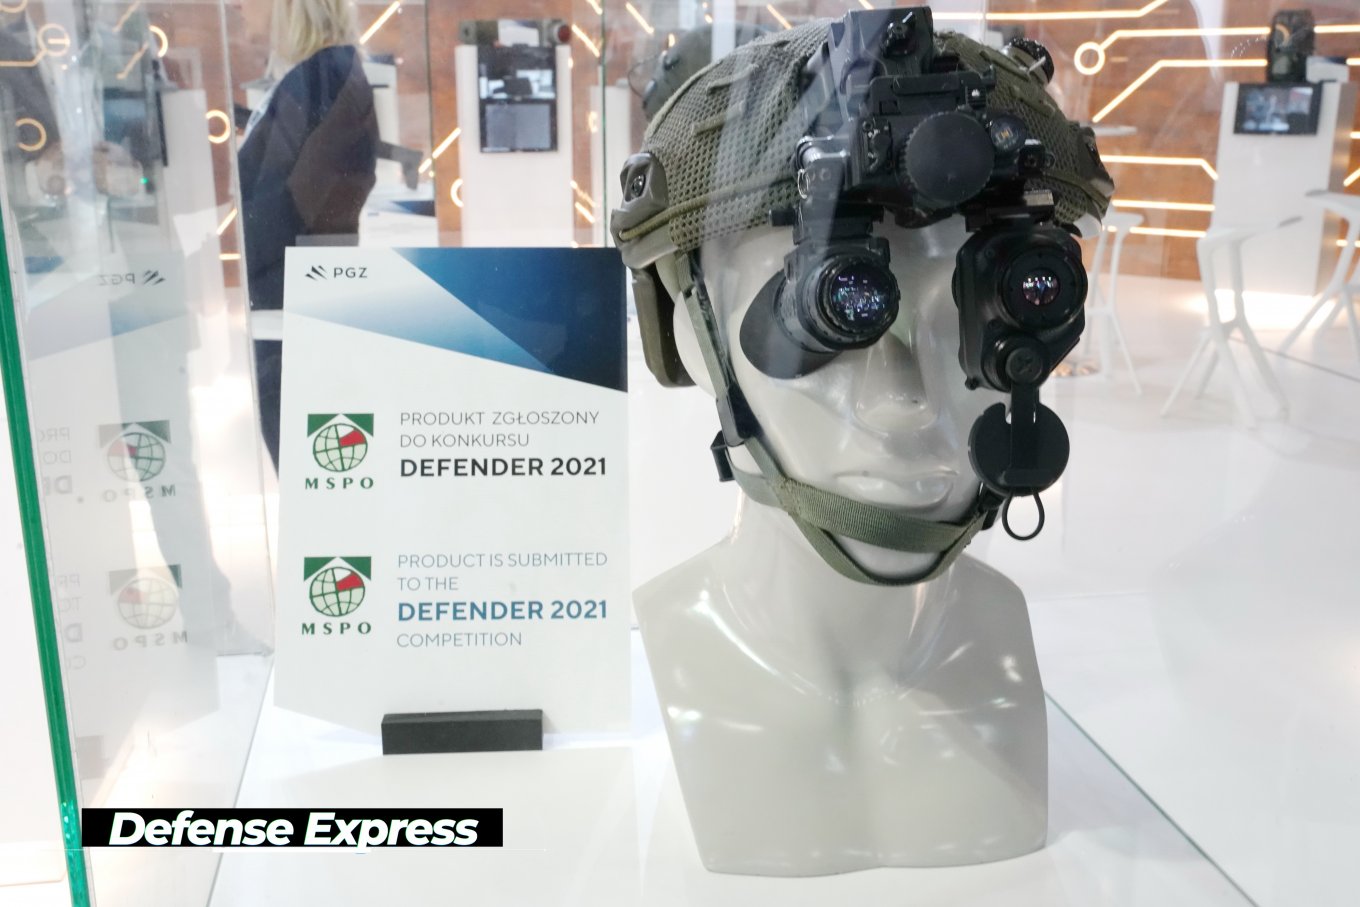 виставка оборонної происловості MSPO-2021, СЗТФ Прогрес,Targi Kielce, Defense Express